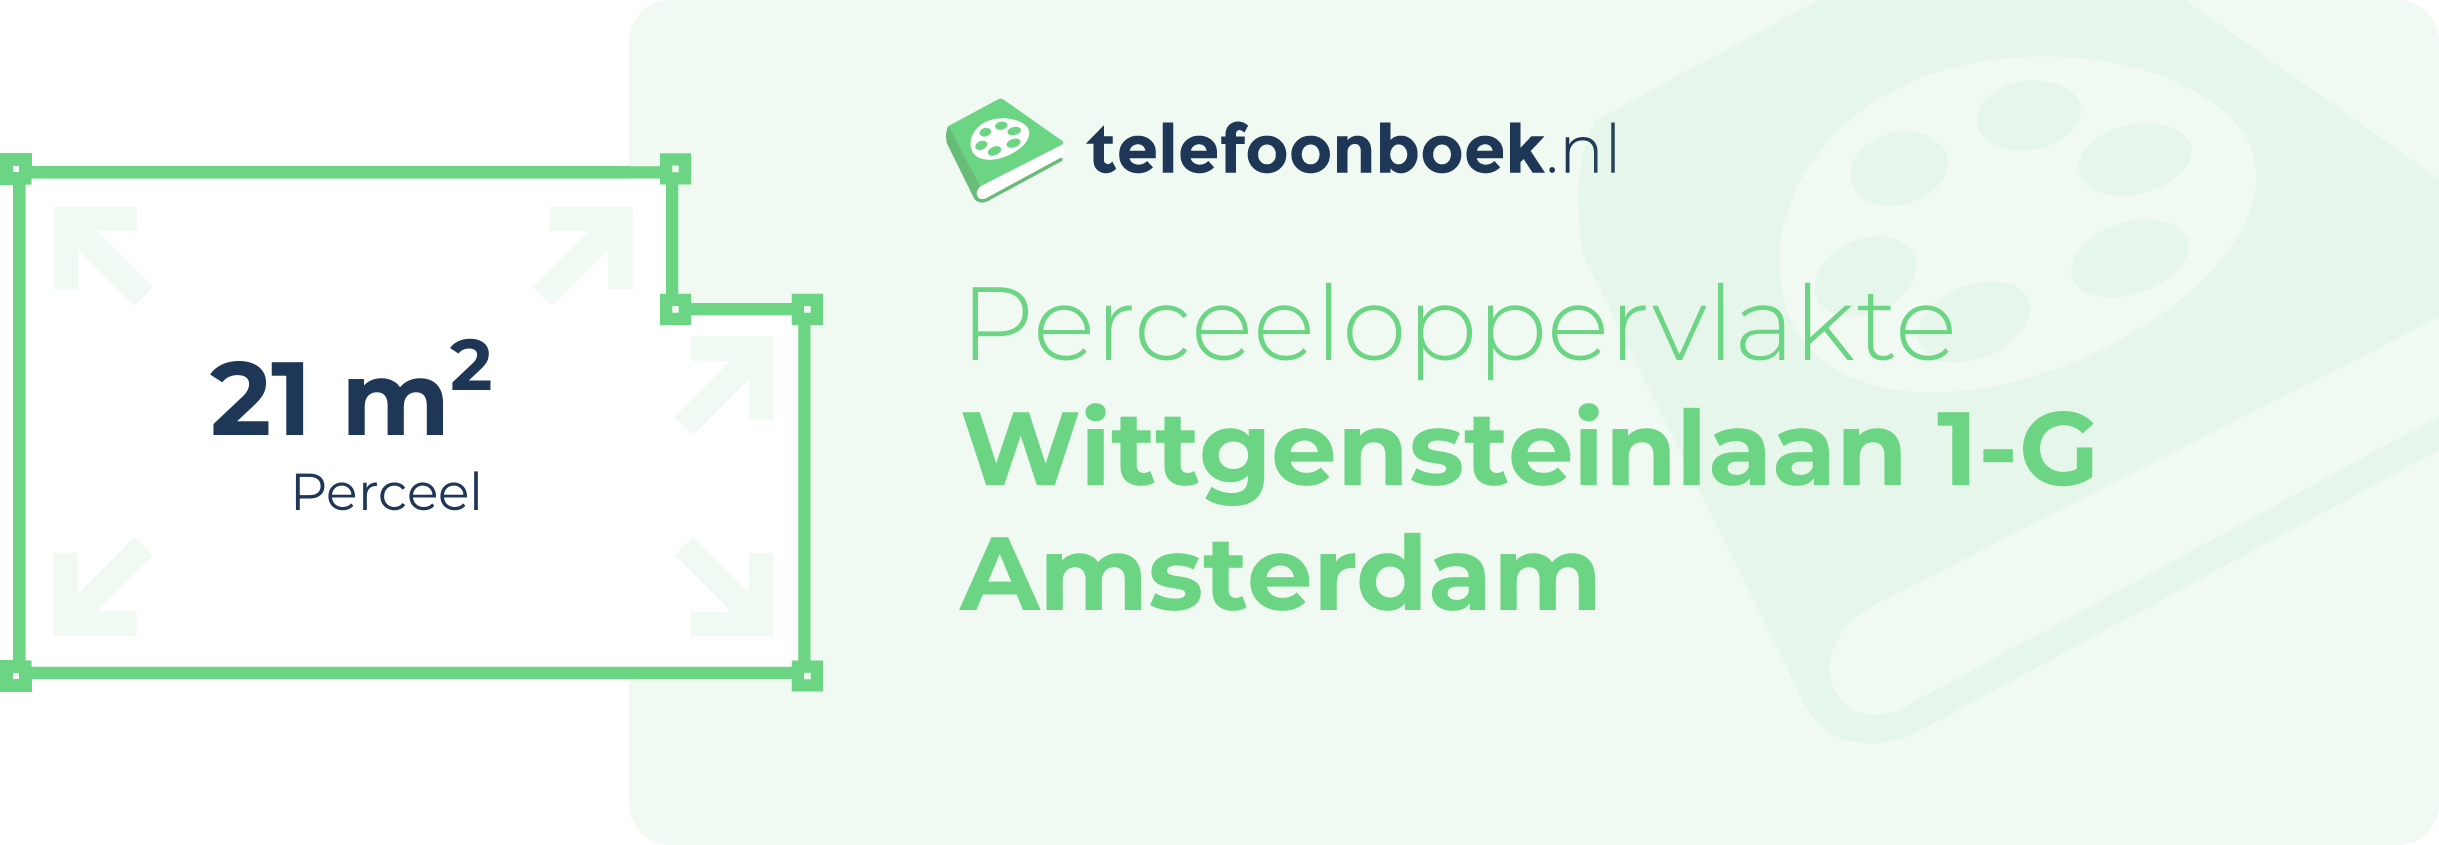 Perceeloppervlakte Wittgensteinlaan 1-G Amsterdam